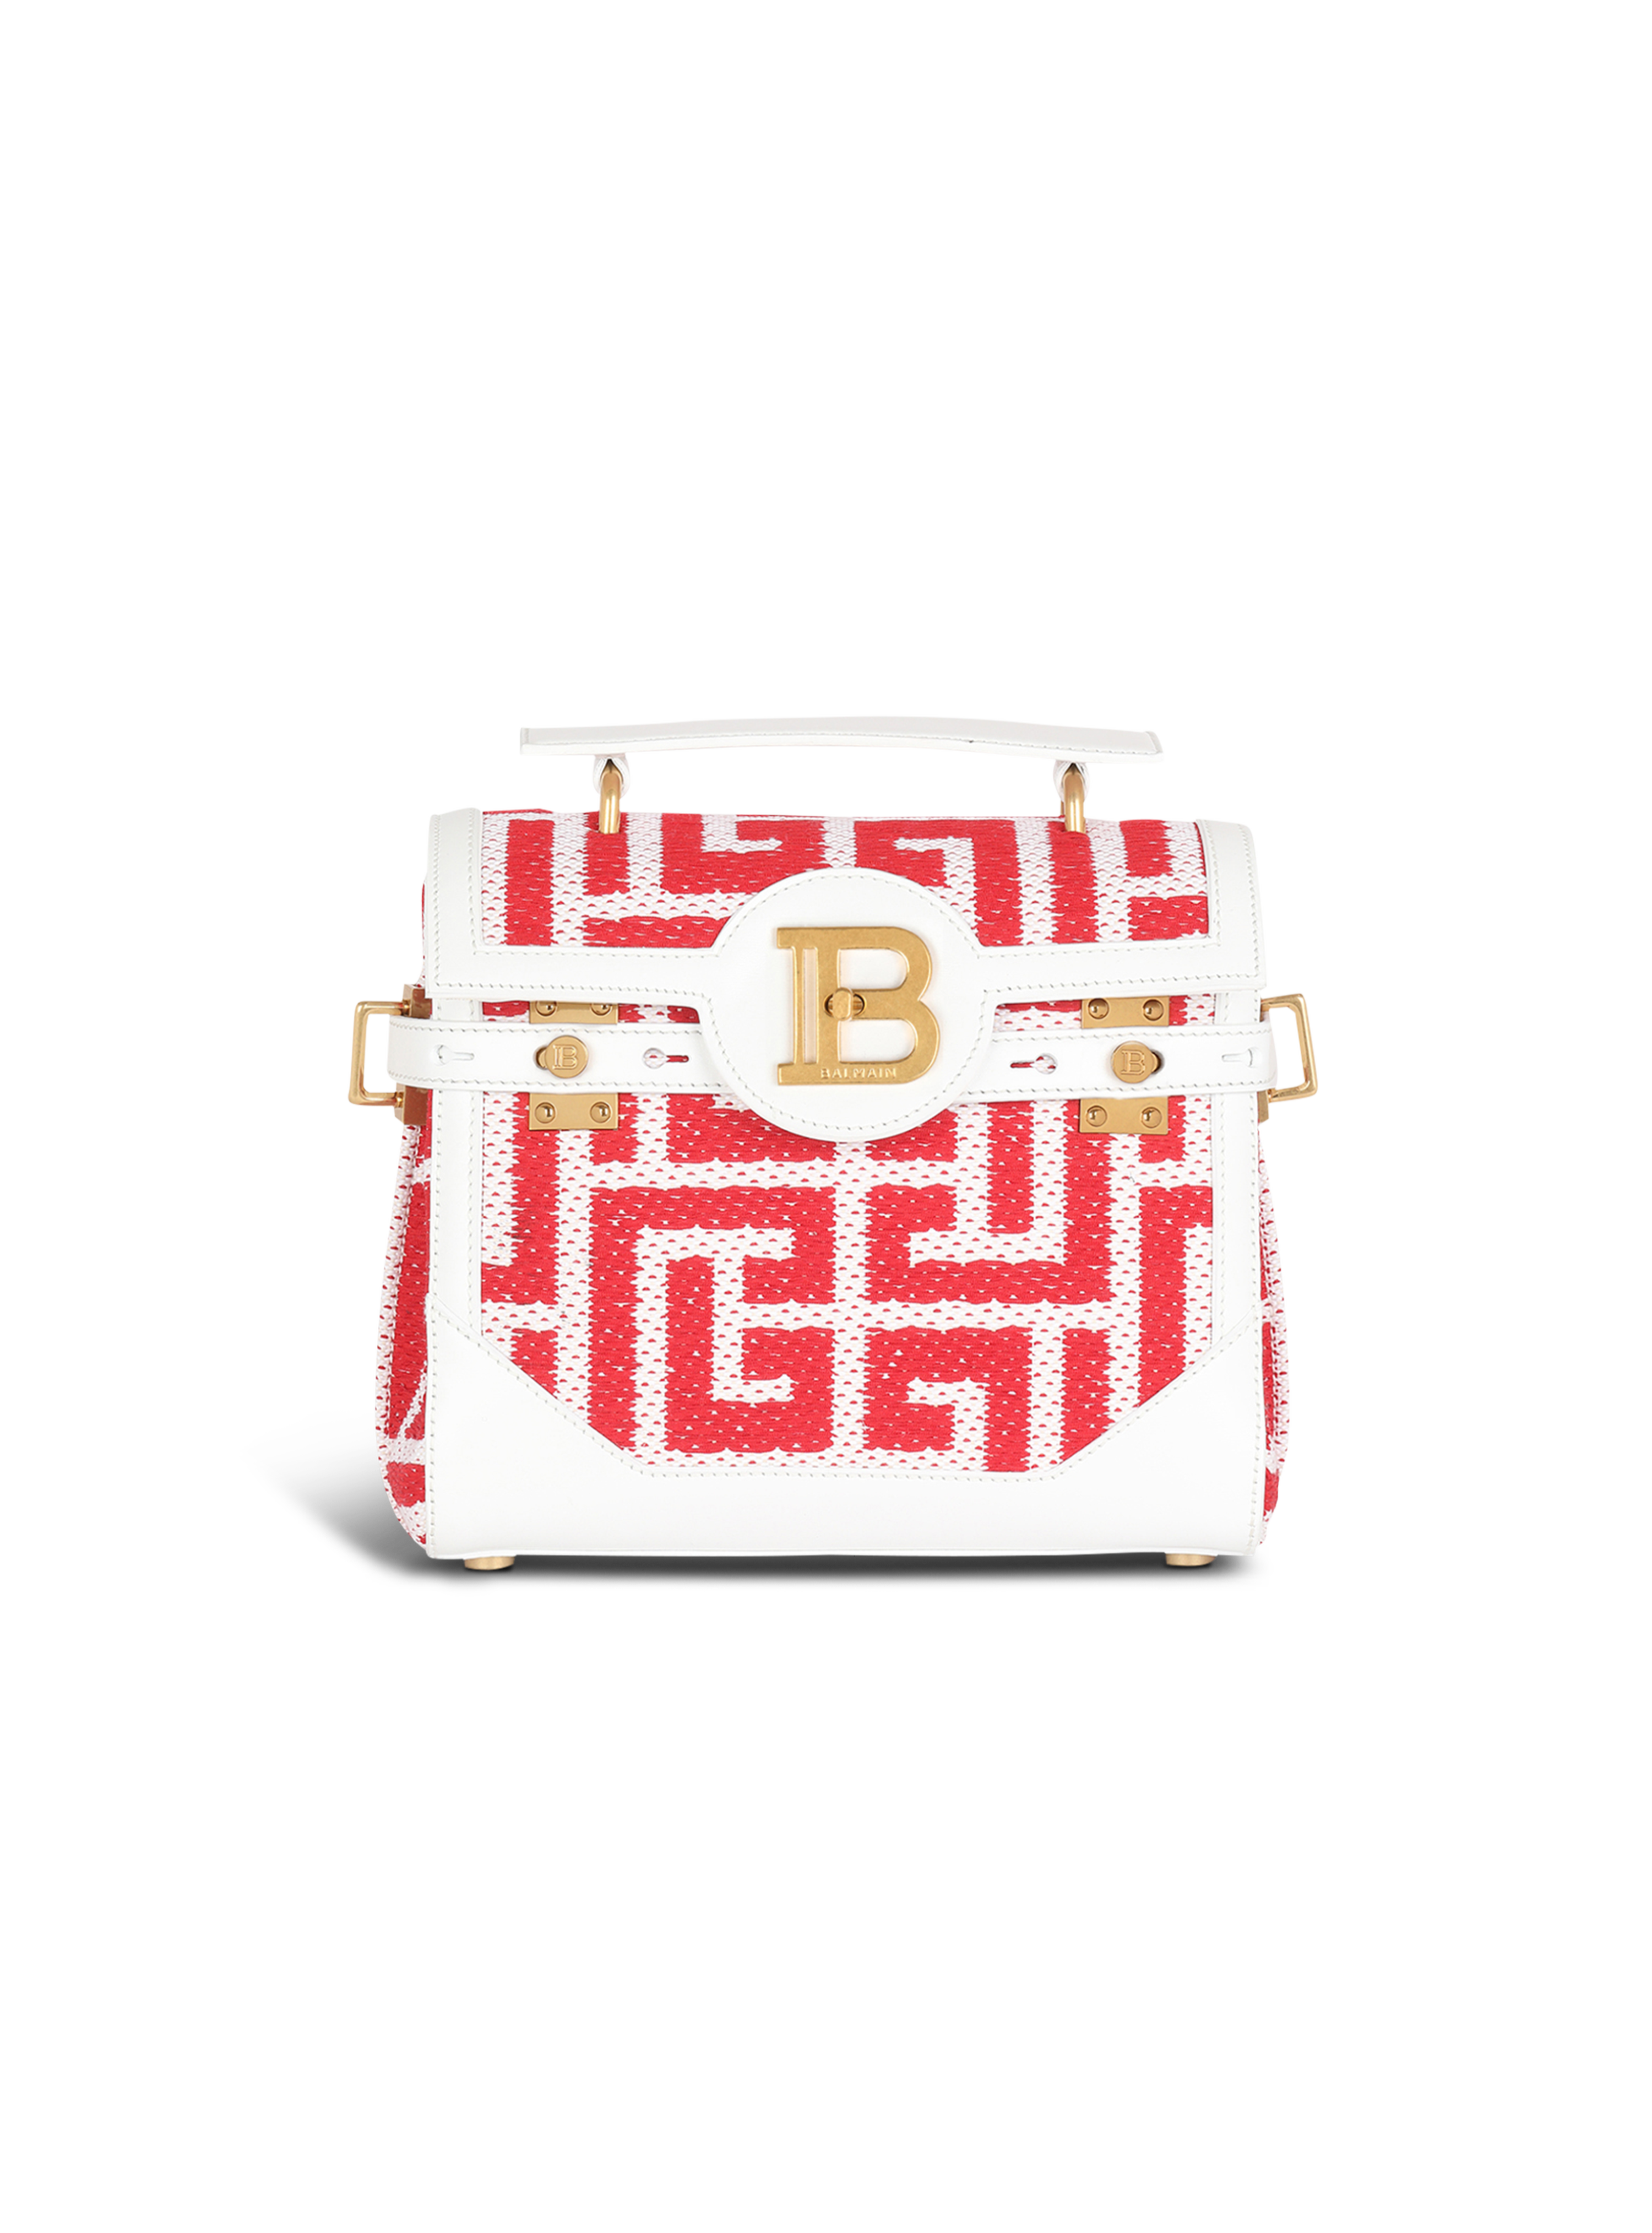 盛夏胶囊系列 - B-Buzz 23 皮革拼饰装饰双色红色提花包袋, red